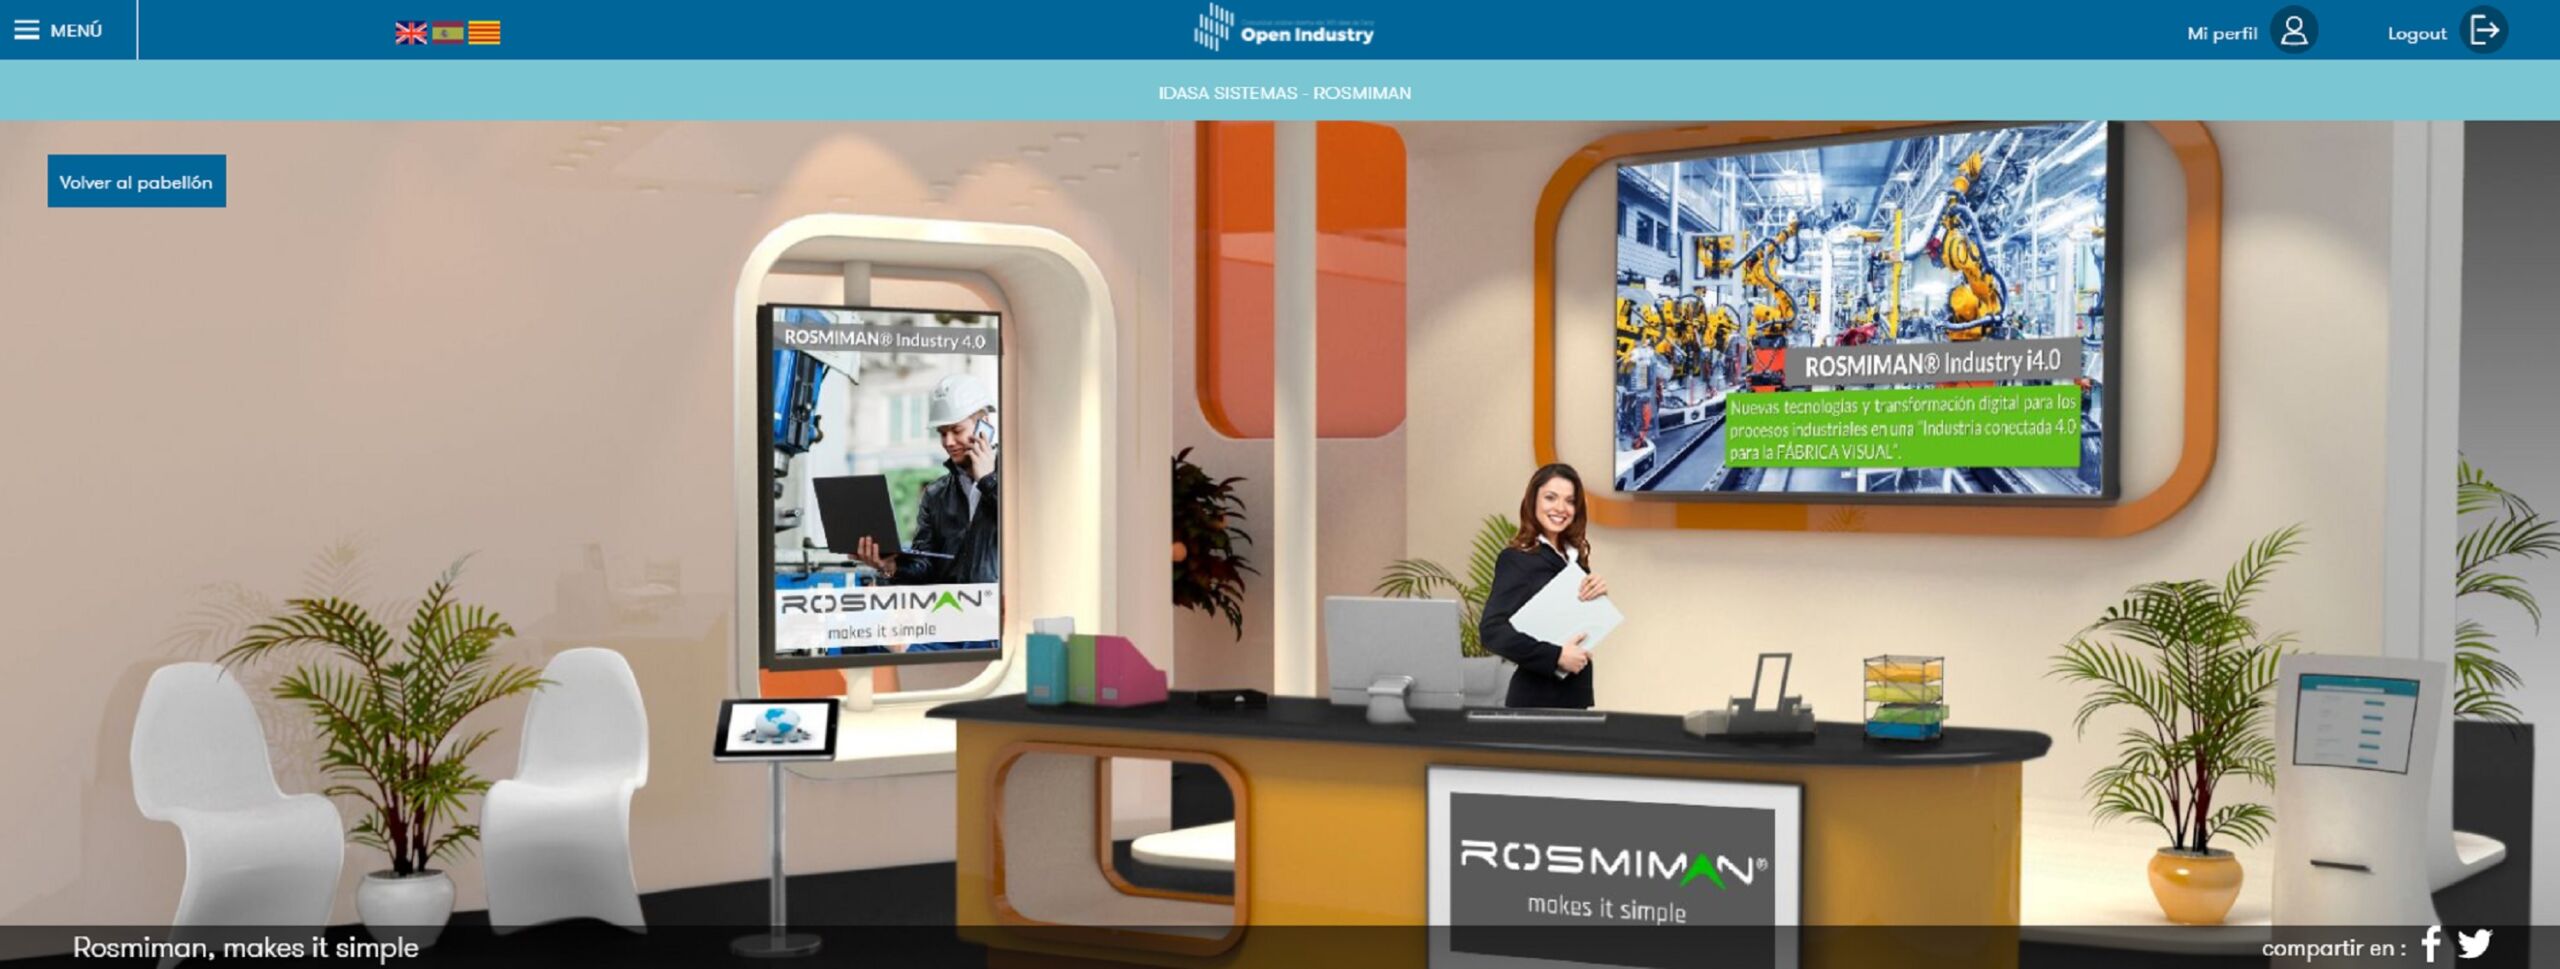 Rosmiman participa en OPEN INDUSTRY con su solución ROSMIMAN® Industry 4.0 para la transformación digital y la industria conectada